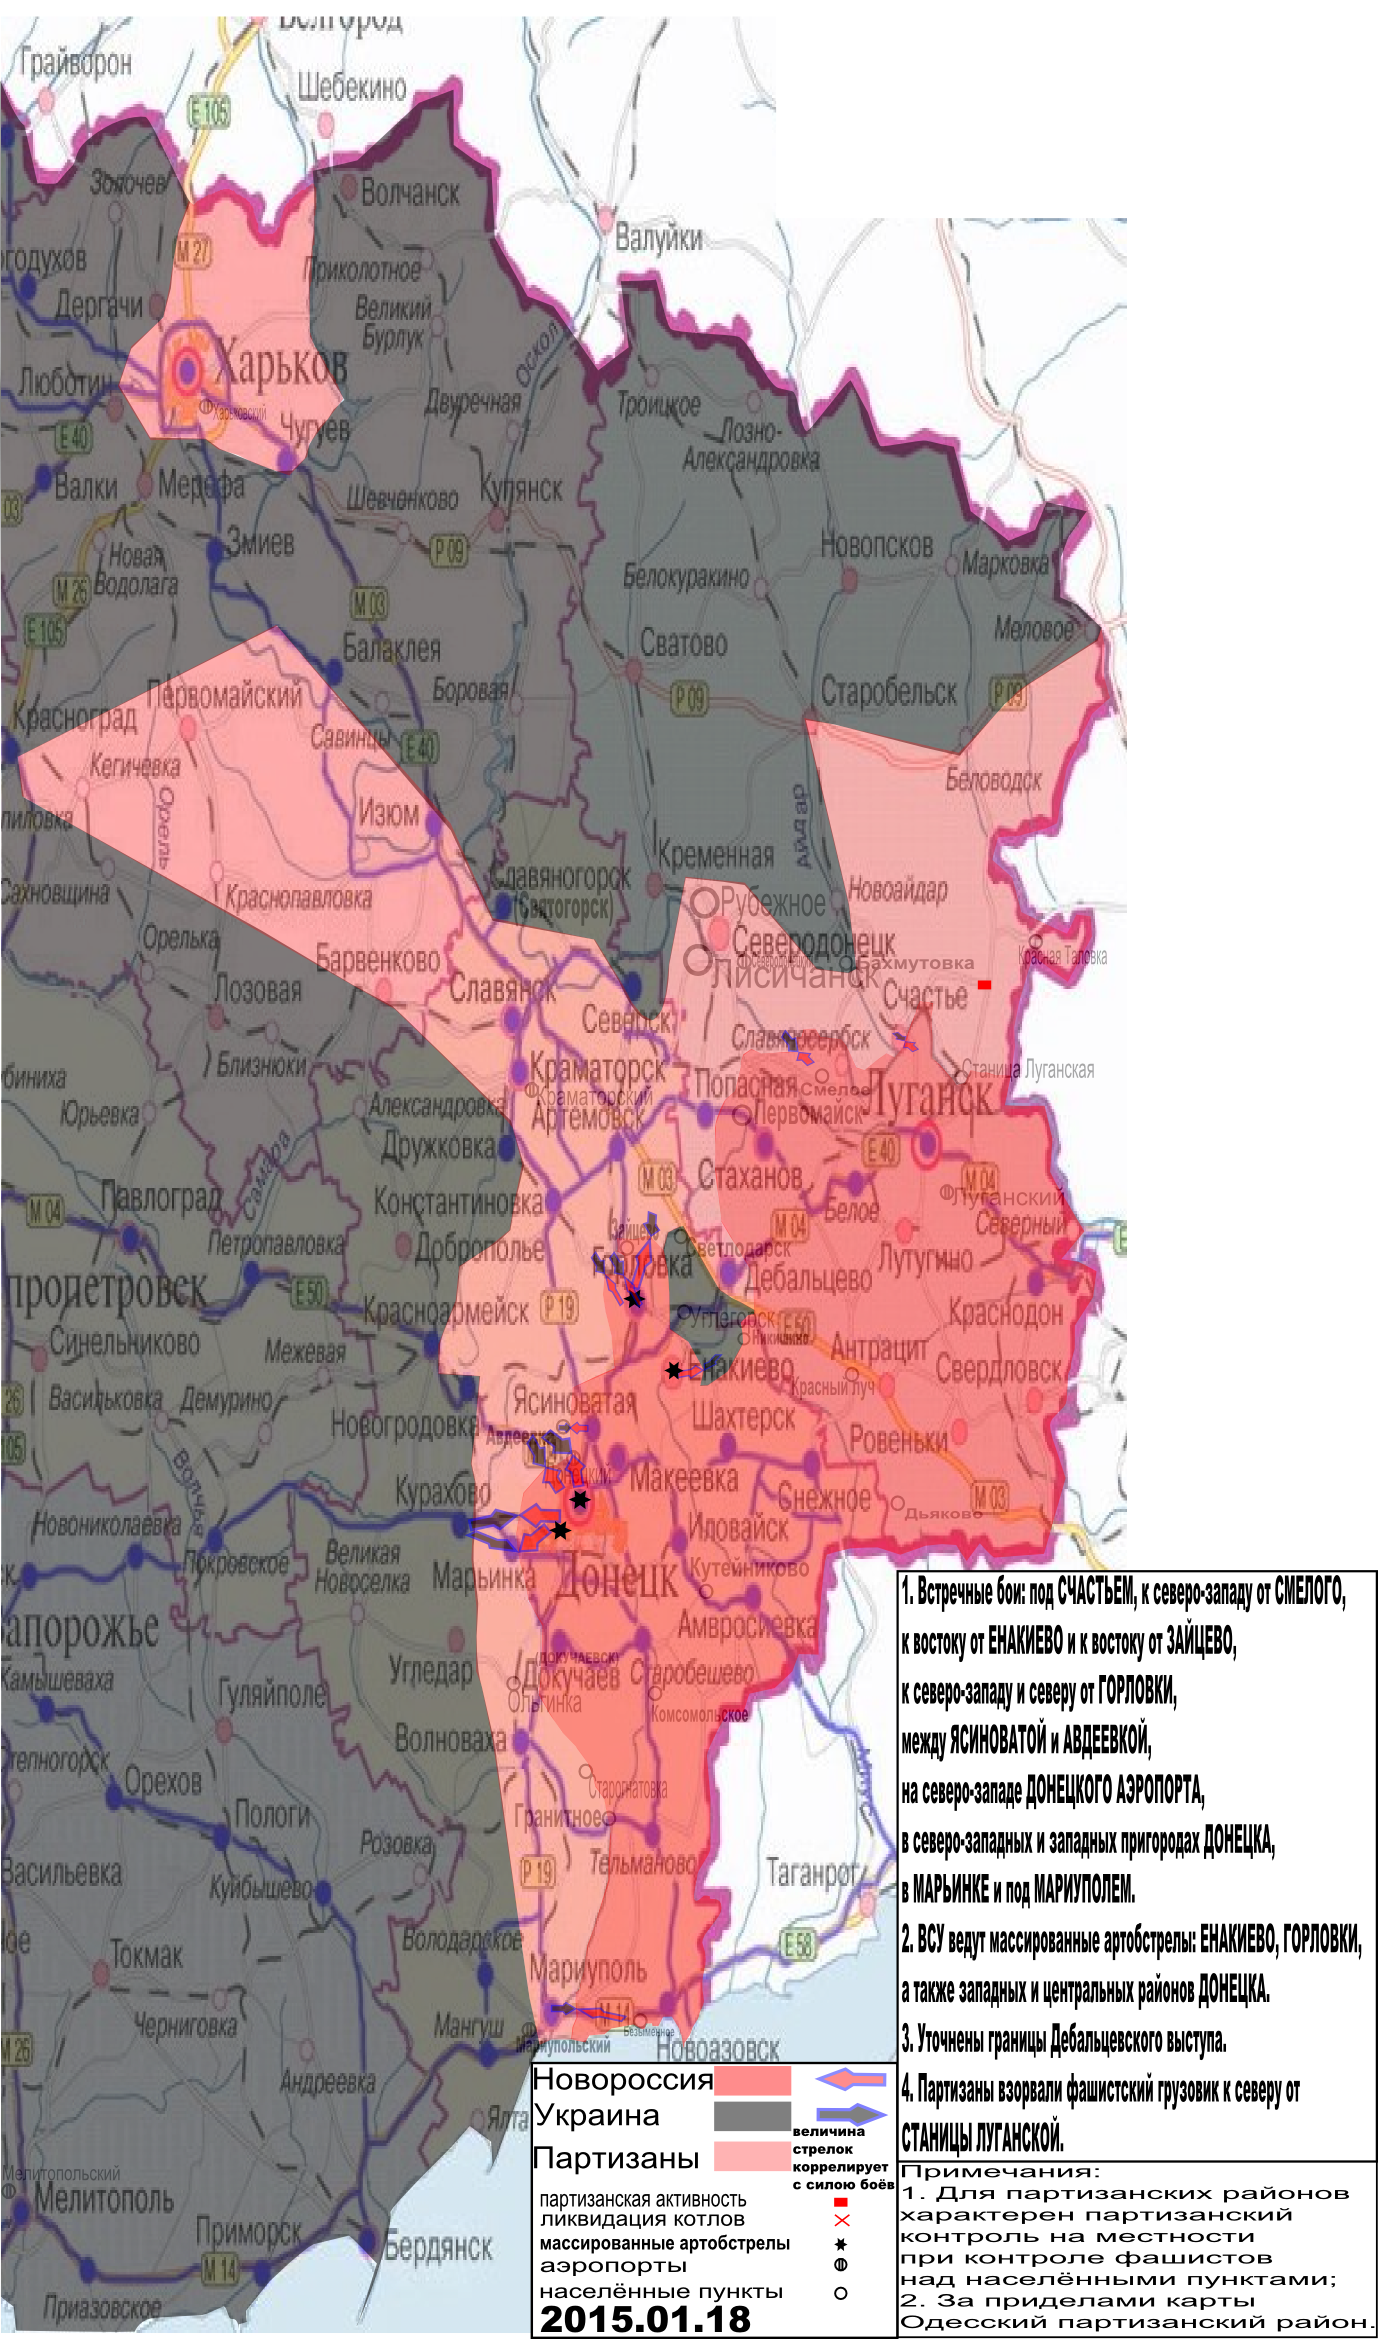 Карта боевых действий и событий в Новороссии с обозначением зон партизанской активности за 18 января 2015